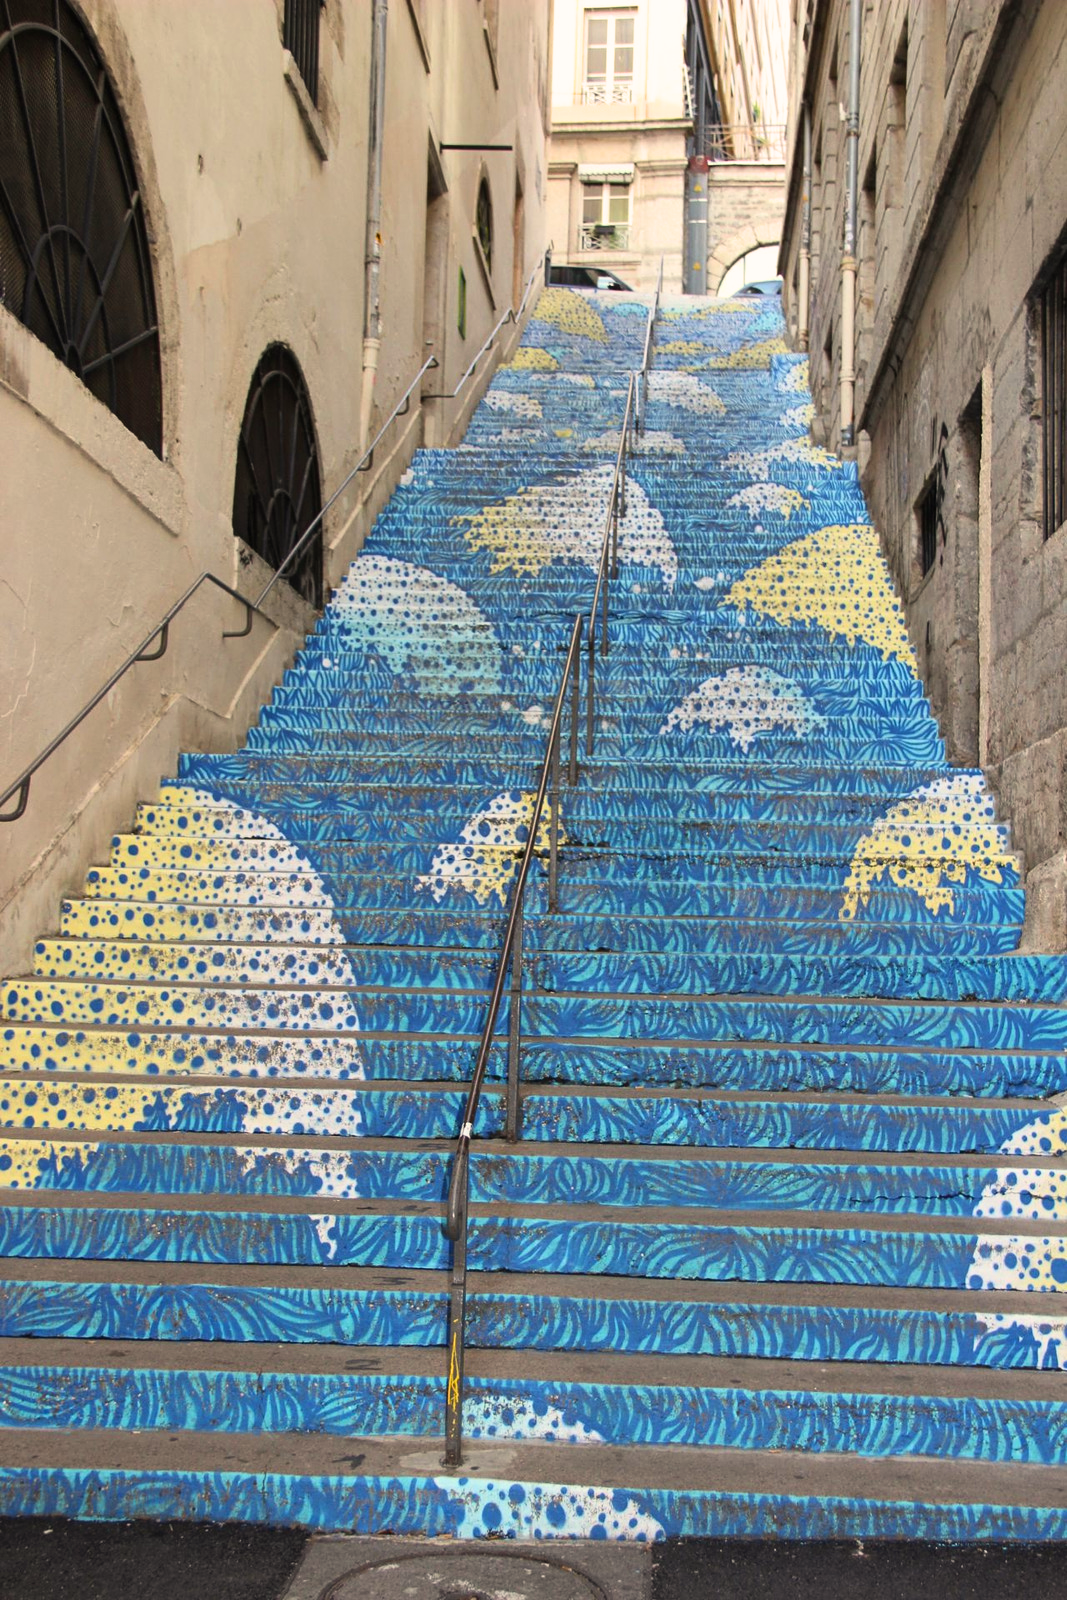 Escalier Mermet peint par Wenc dans les pentes de la Croix-Rousse - © LV